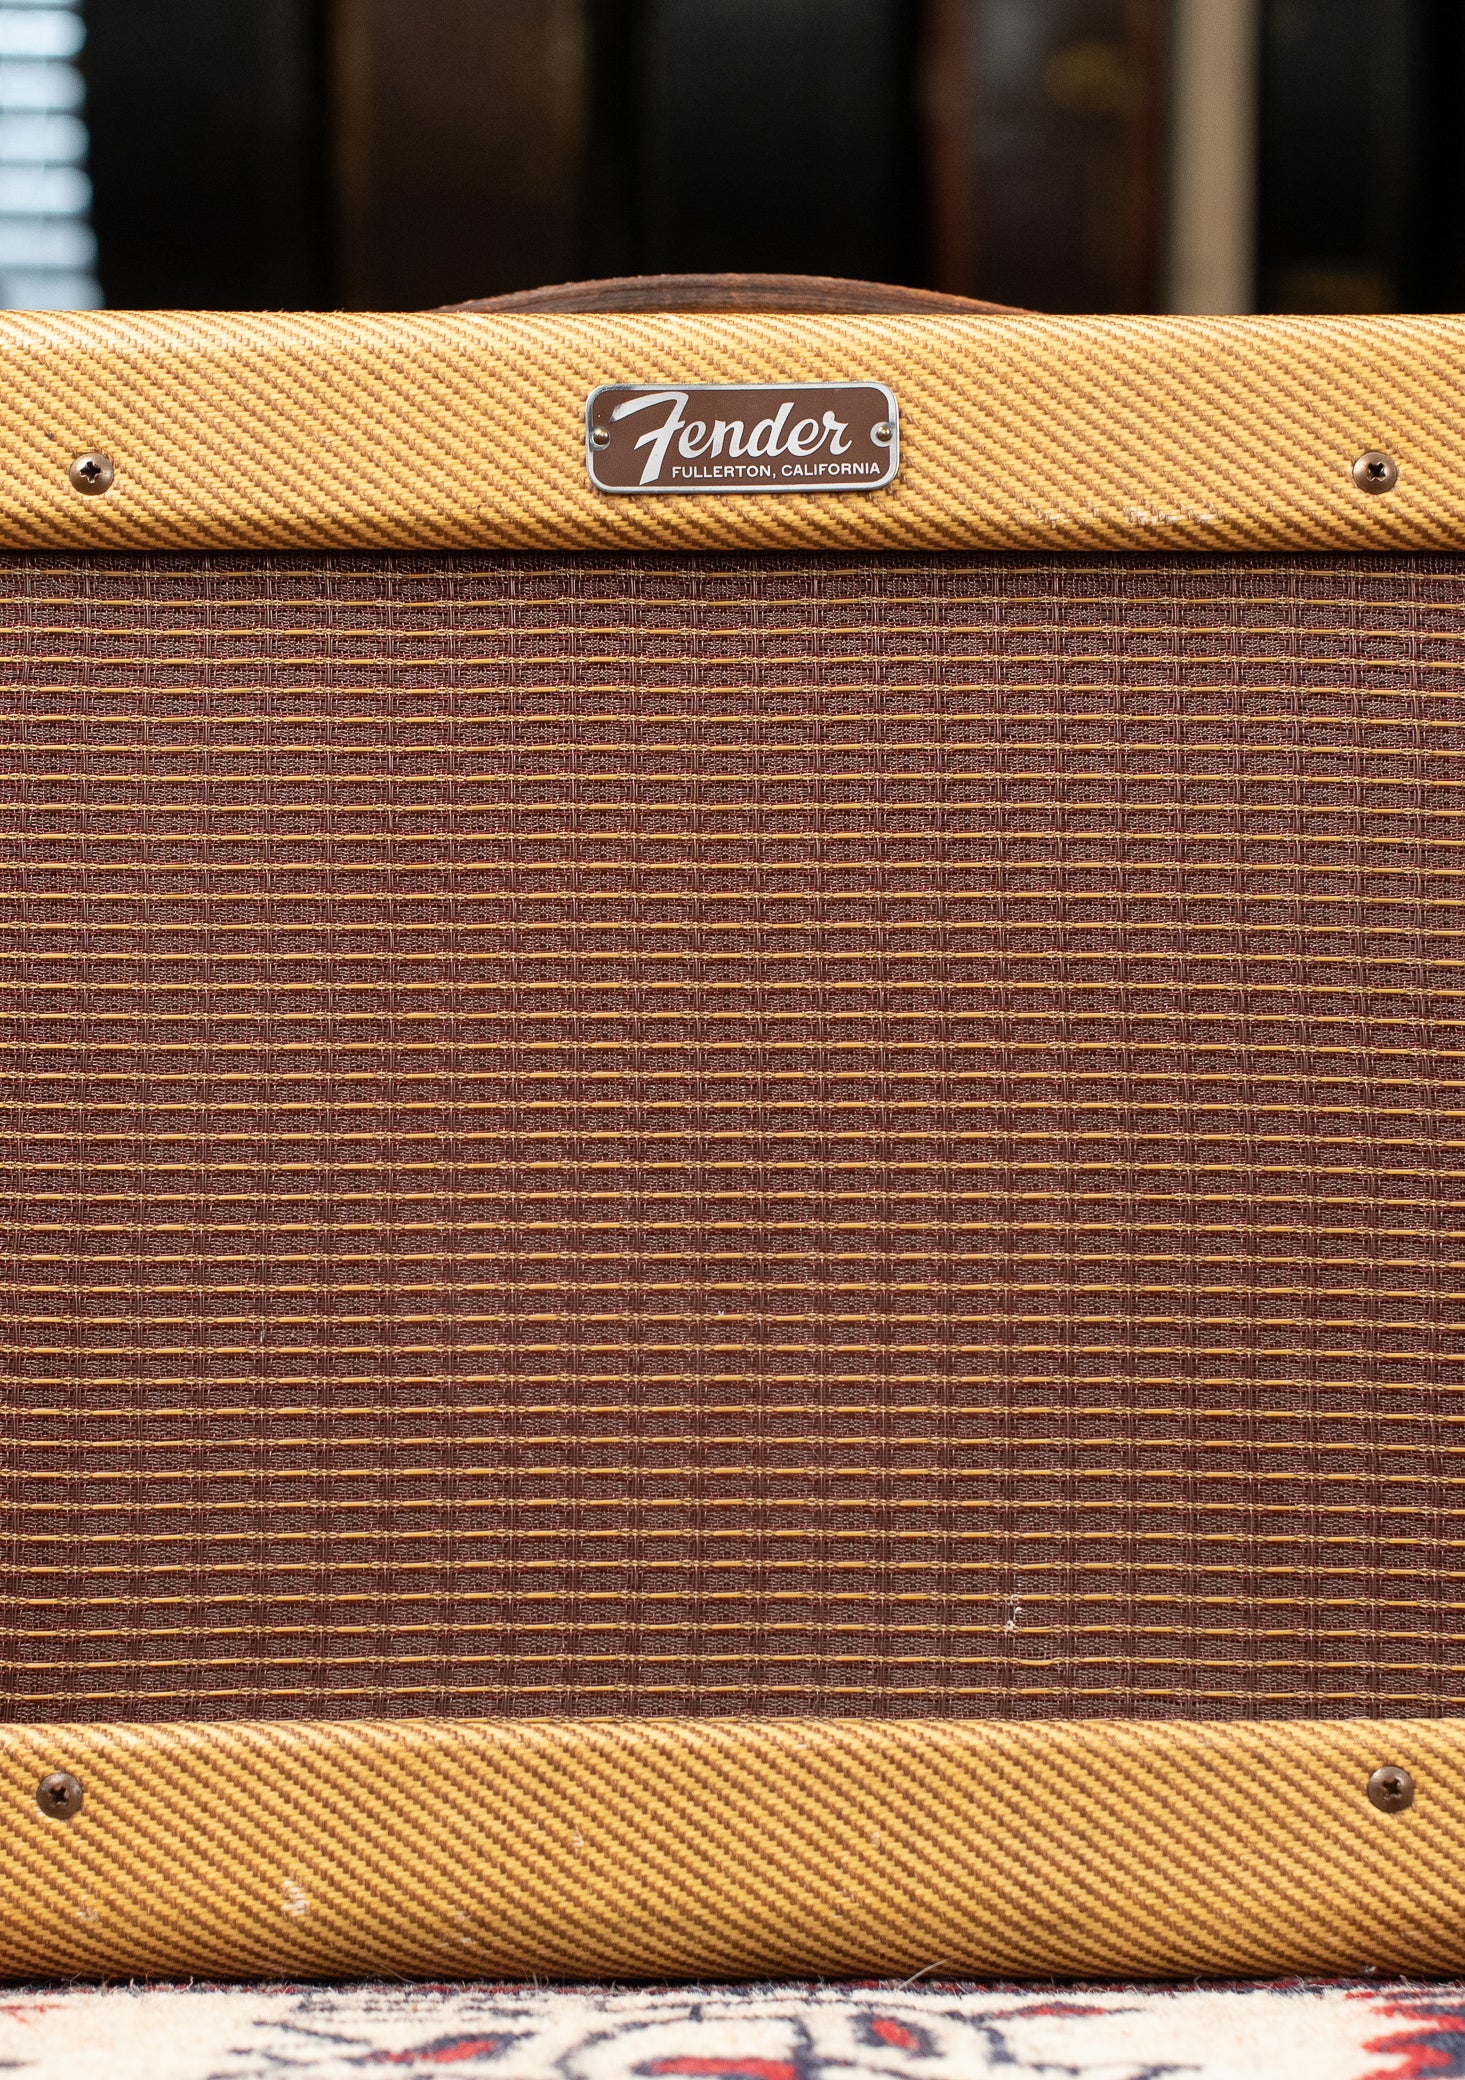 Vintage 1957 Fender Champ Amplifier tweed